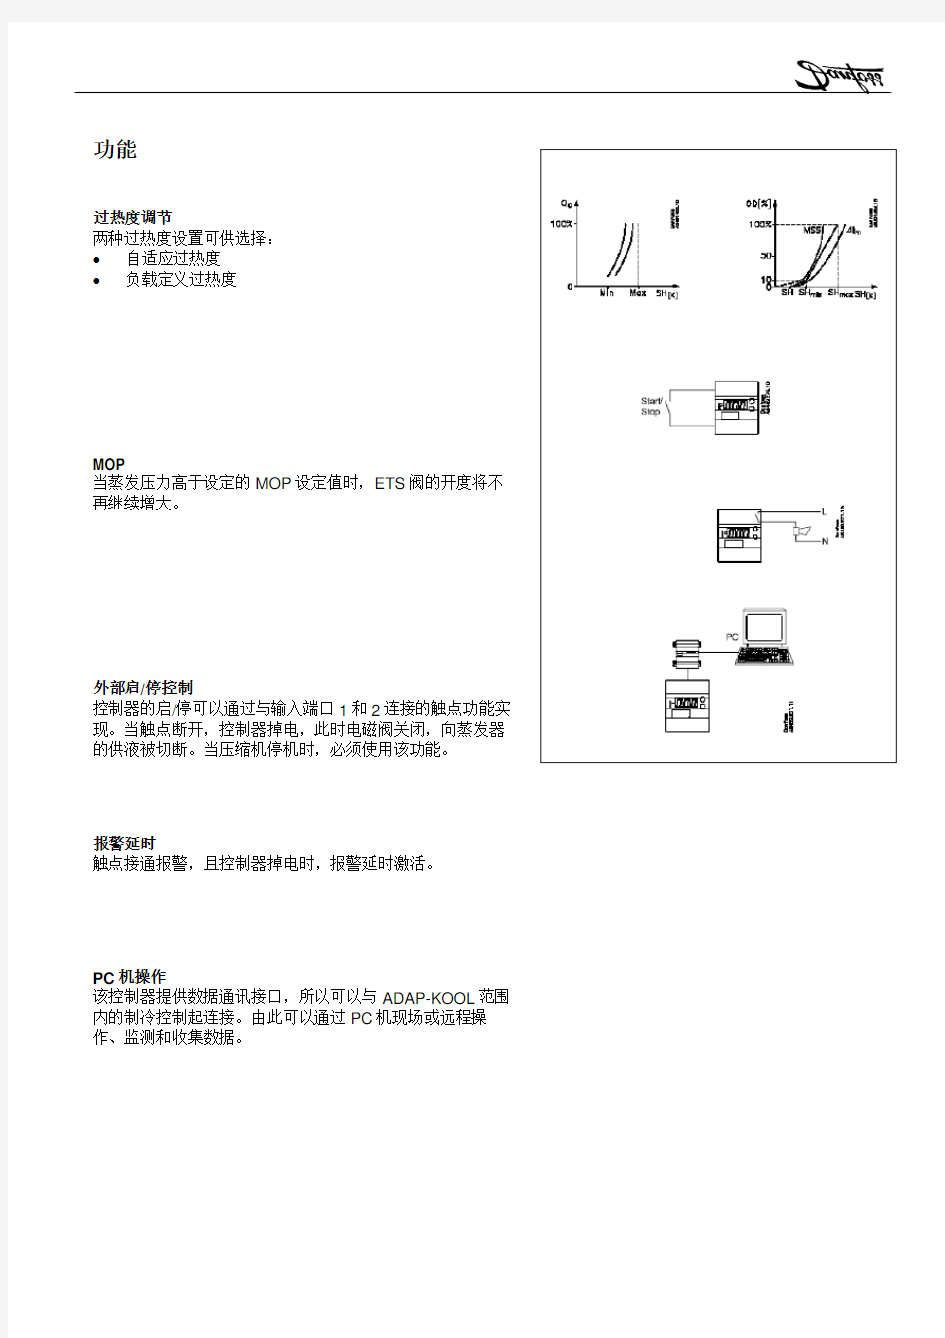 中央空调电子膨胀阀操作说明 中文版样本